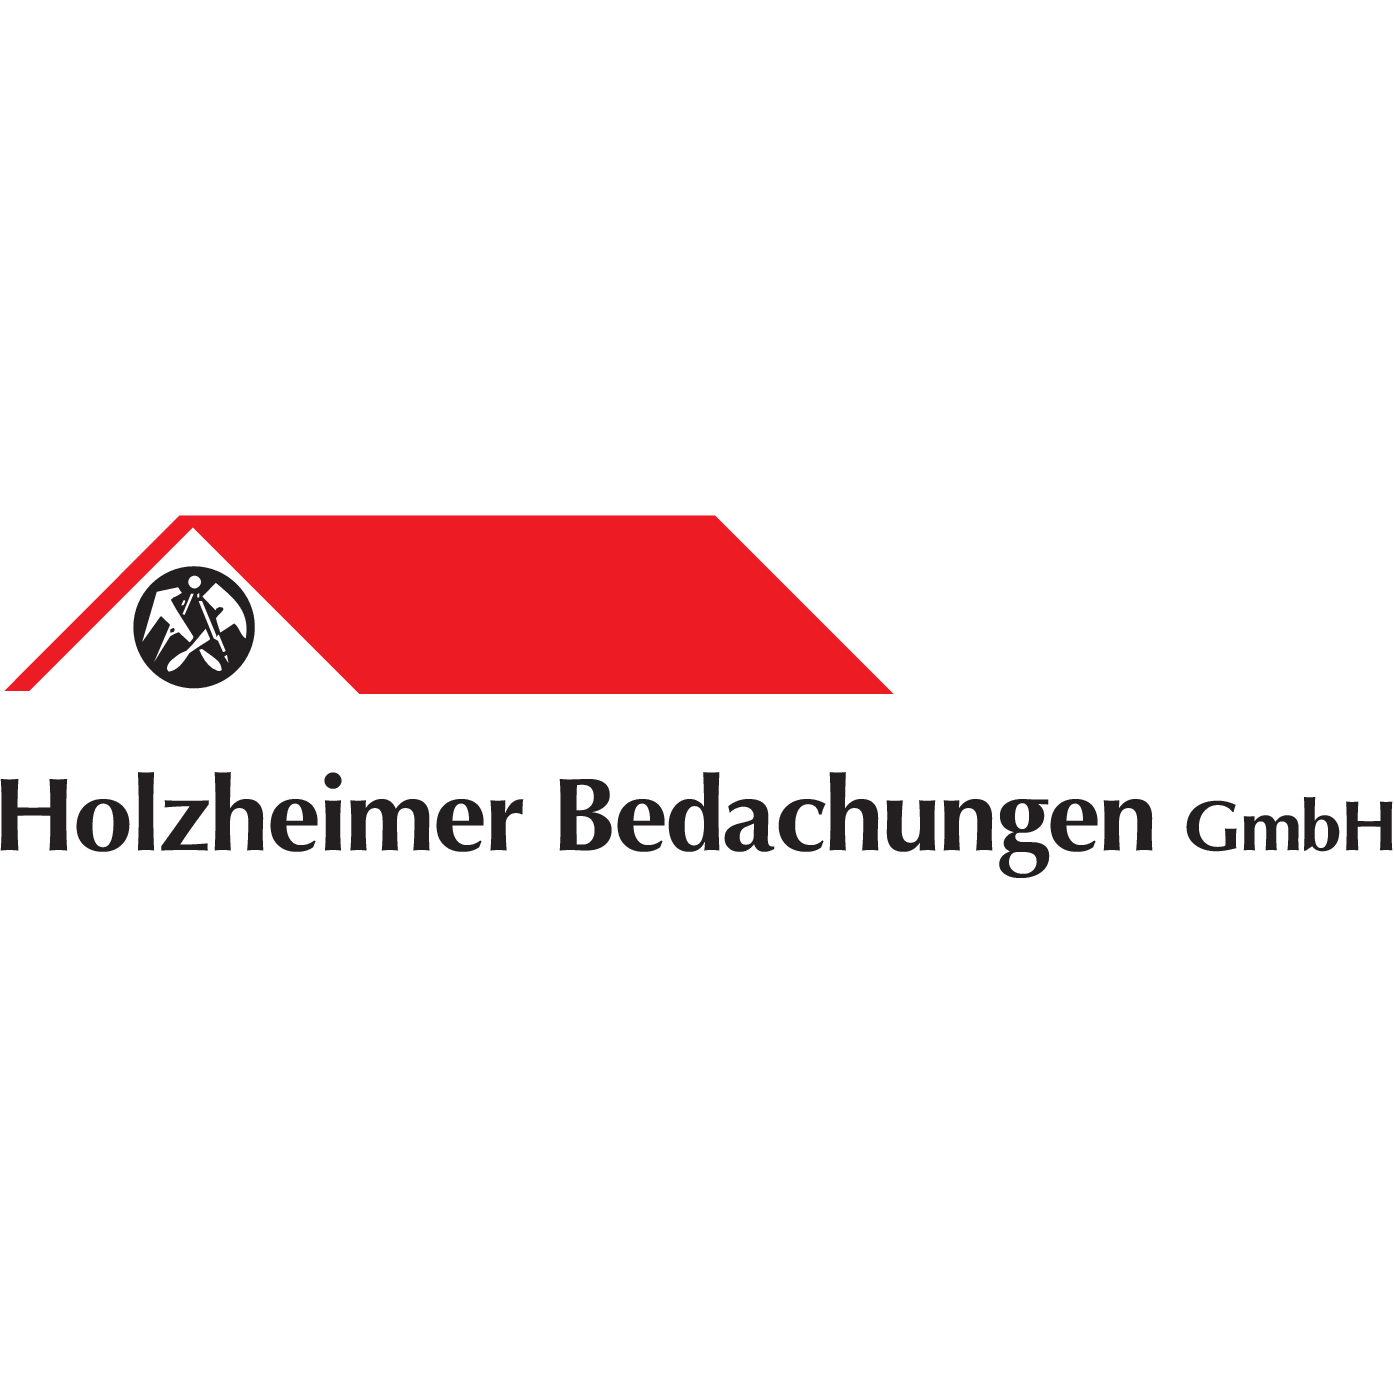 Holzheimer Bedachungen GmbH in Bischofsheim an der Rhön - Logo